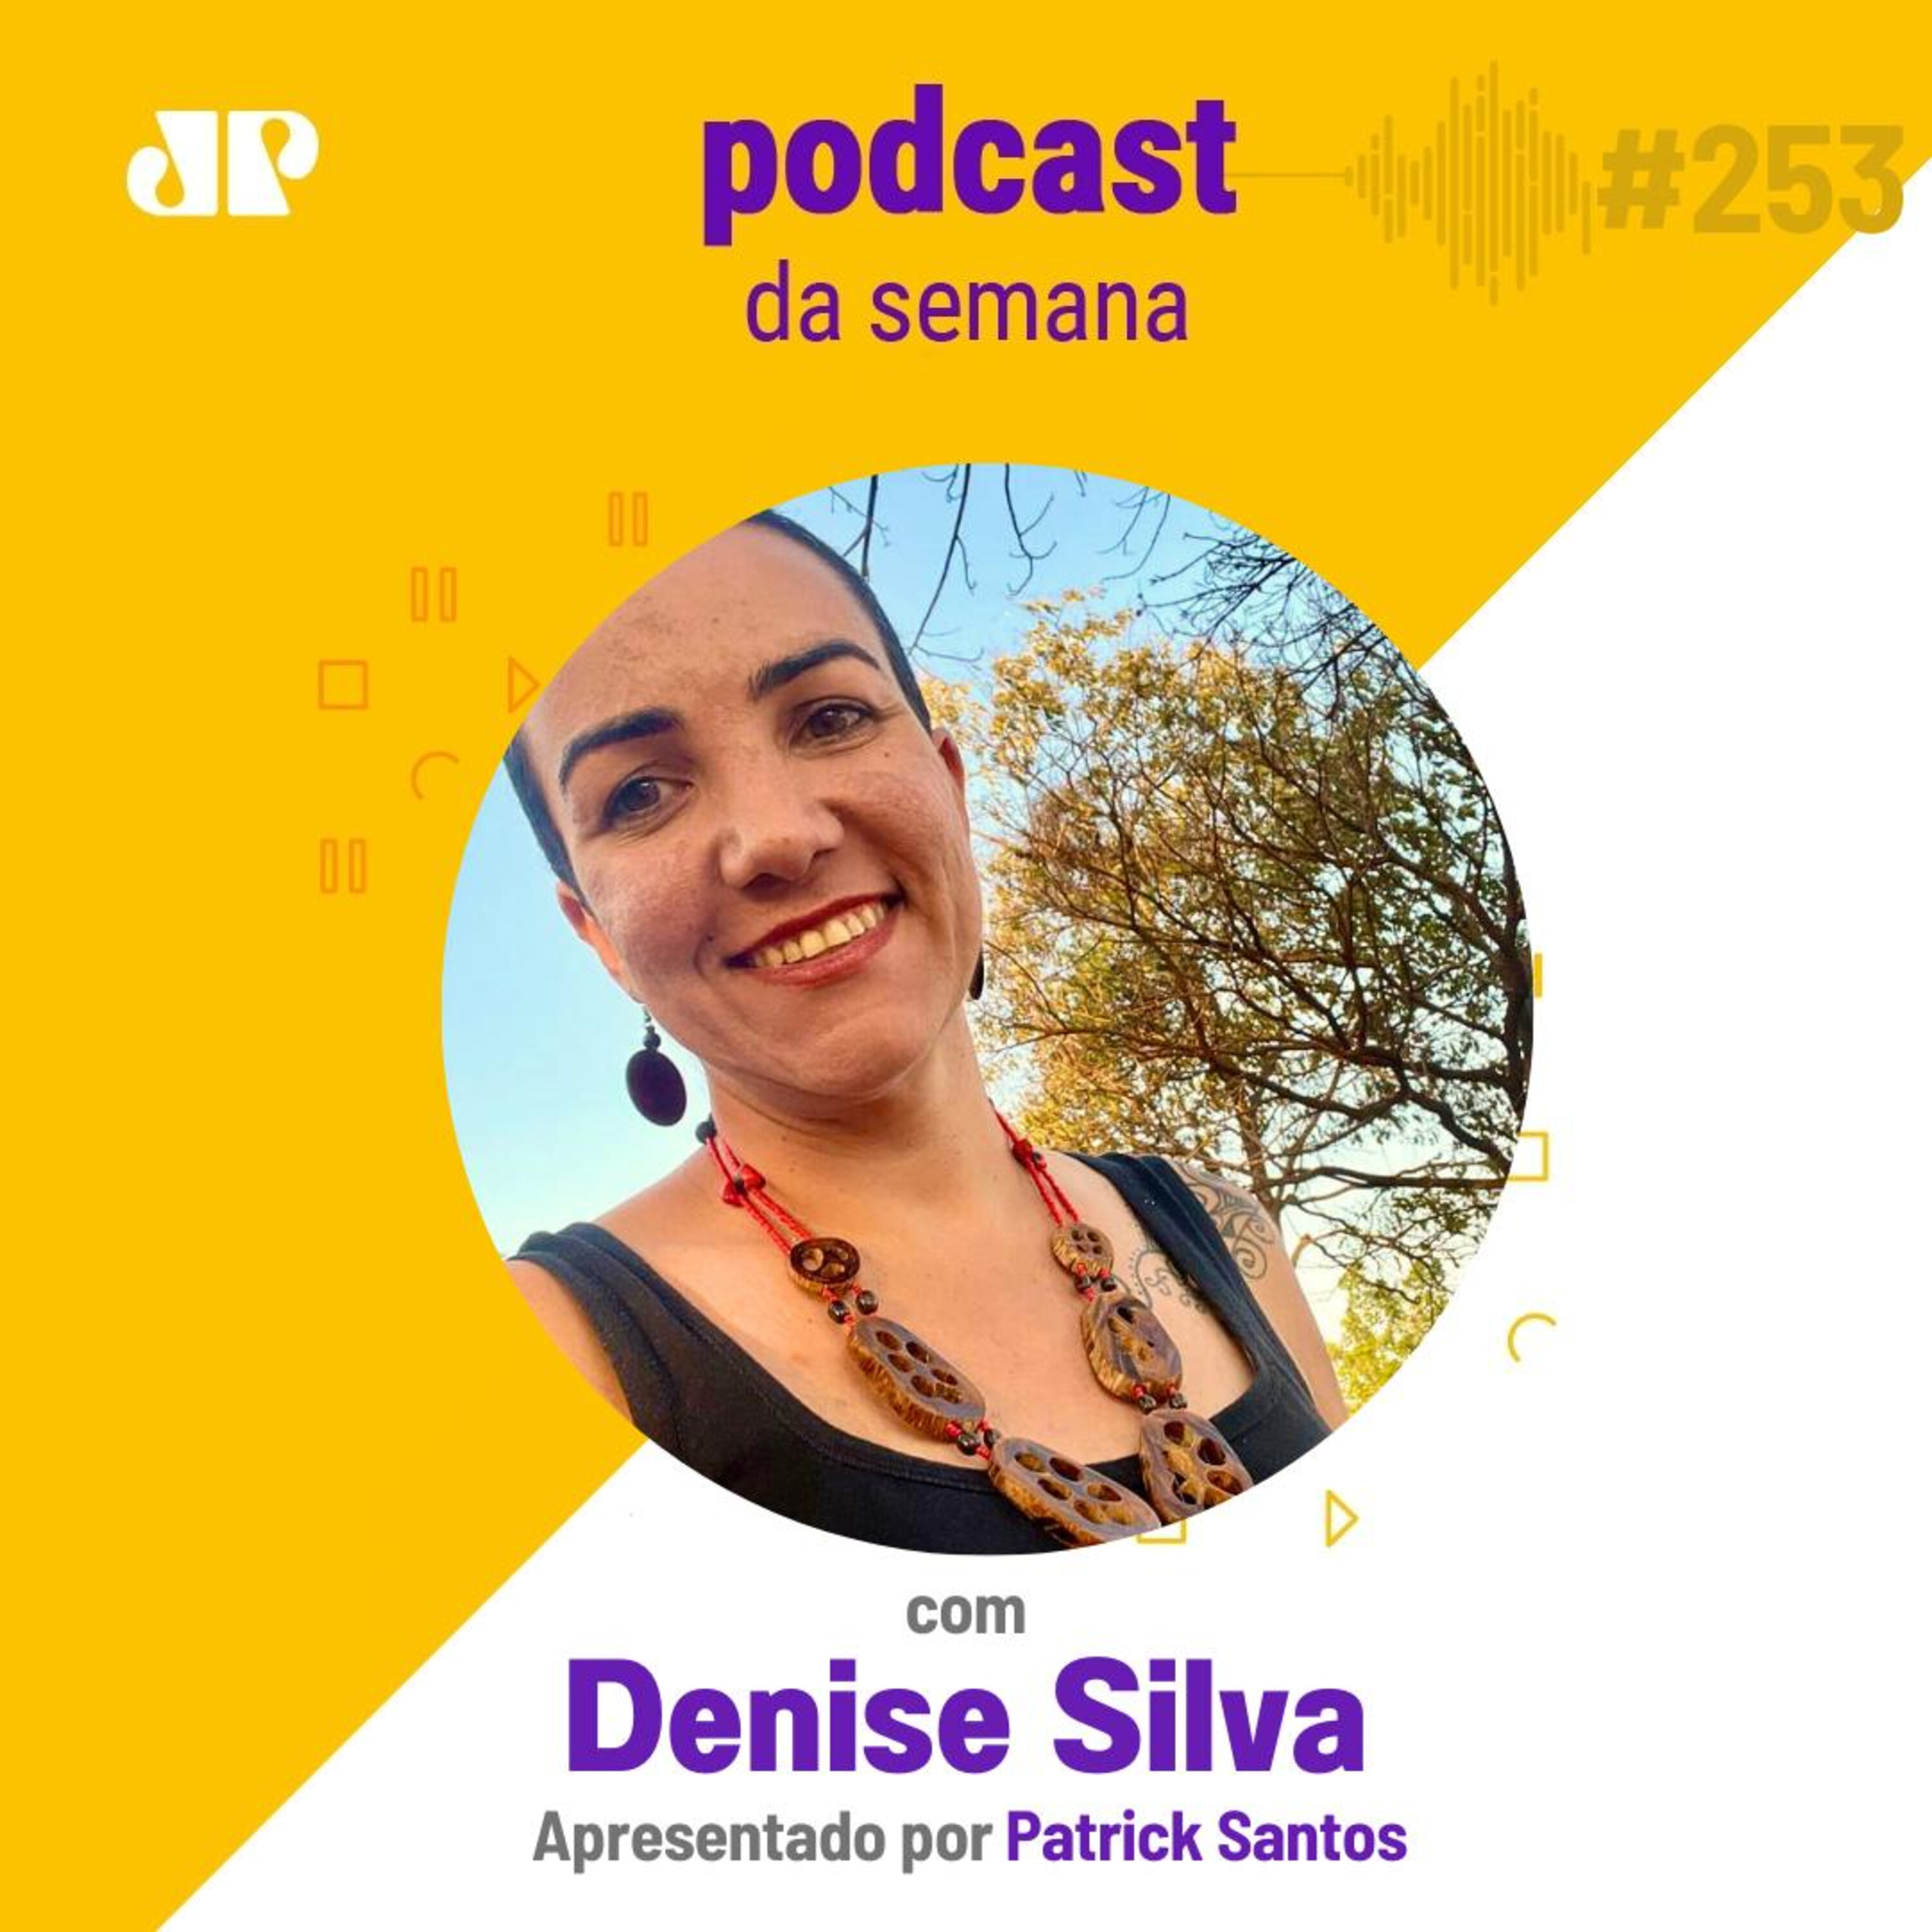 Denise Silva - "O que vale na vida são as relações que construímos"